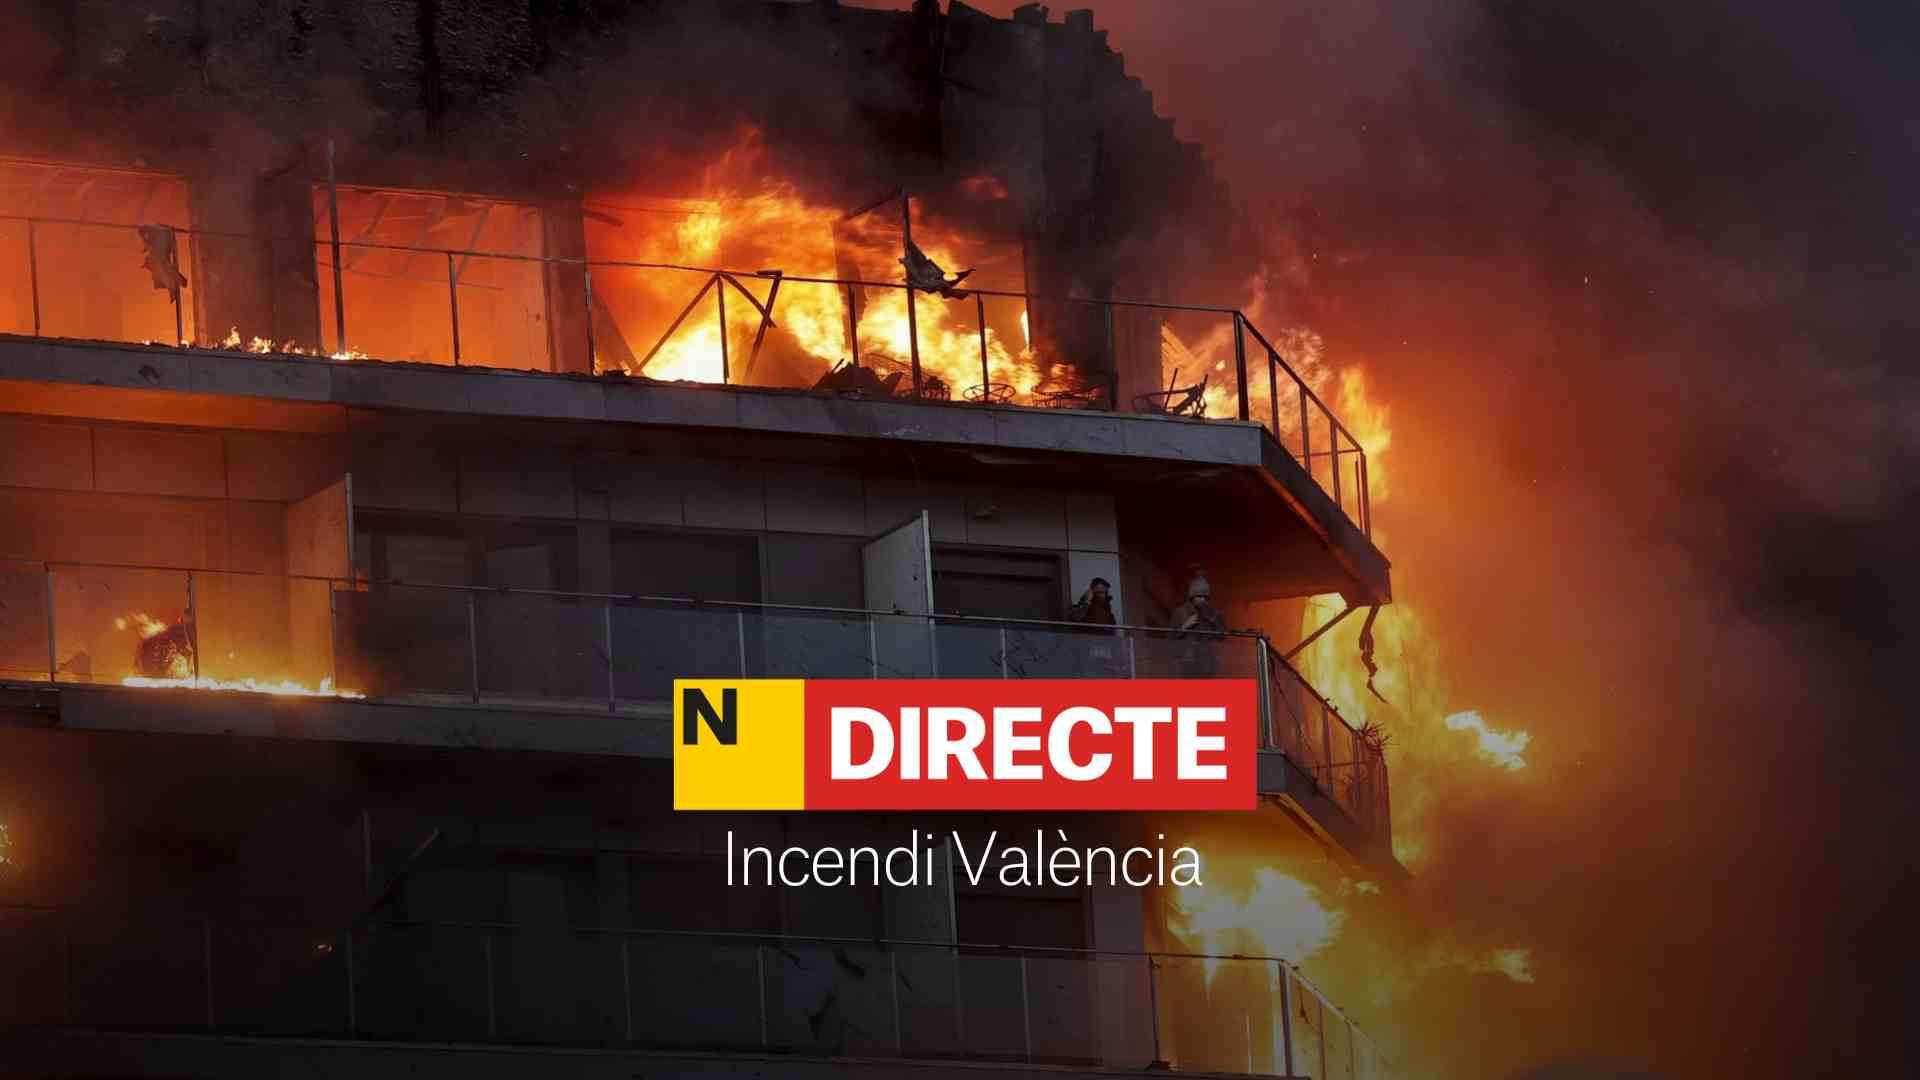 Incendio en València, DIRECTO | Última hora de las víctimas y desaparecidos